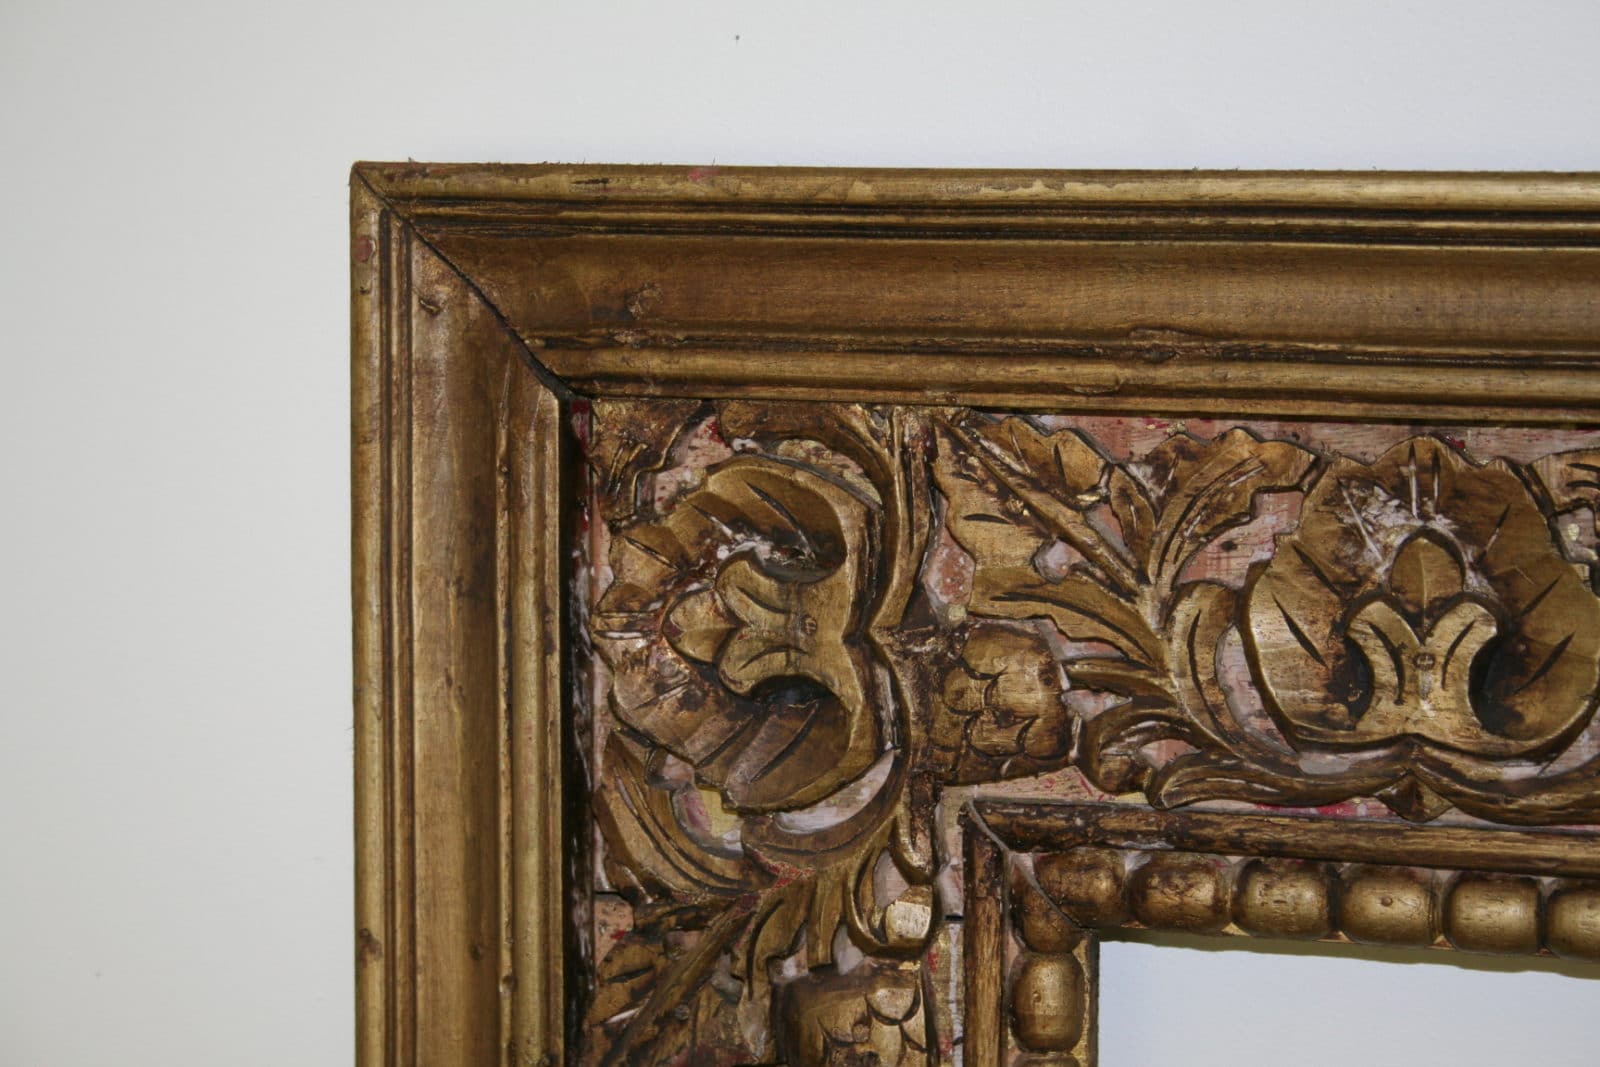 Large Antique Style Carved Ornate Vintage Gilt Wood Mirror Frame (4ft x